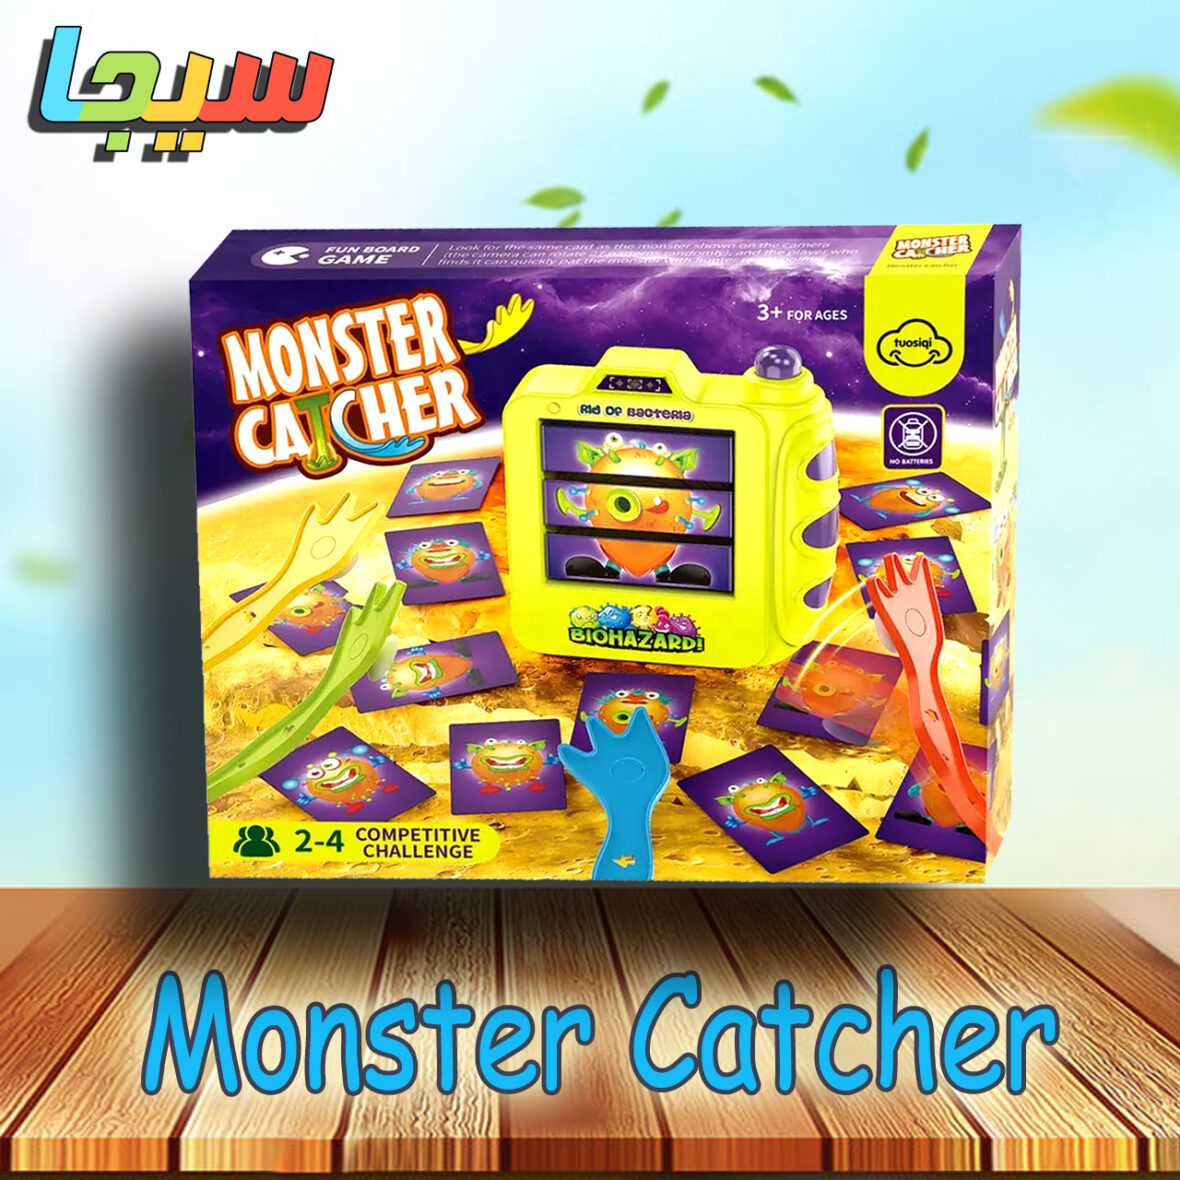 Monster Catcher